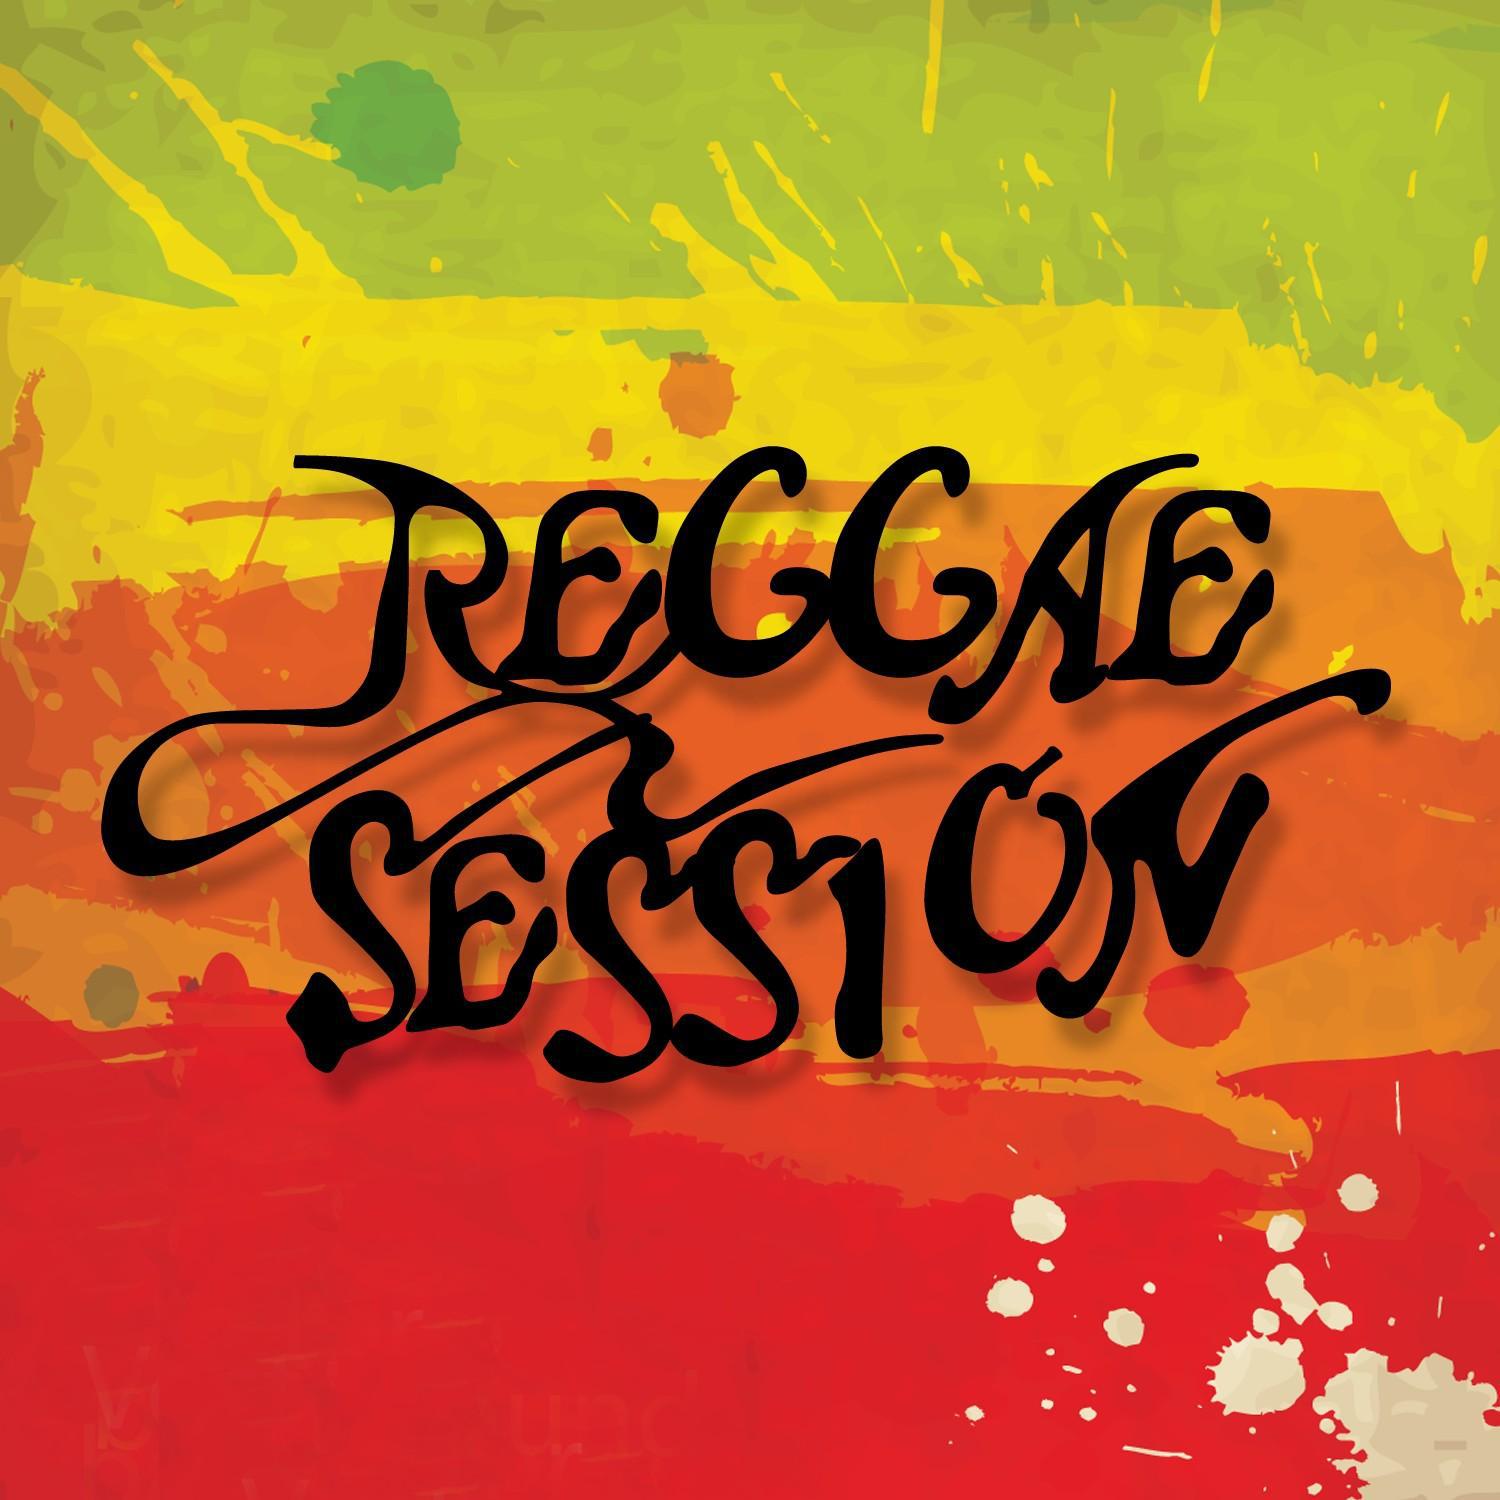 Reggae Session